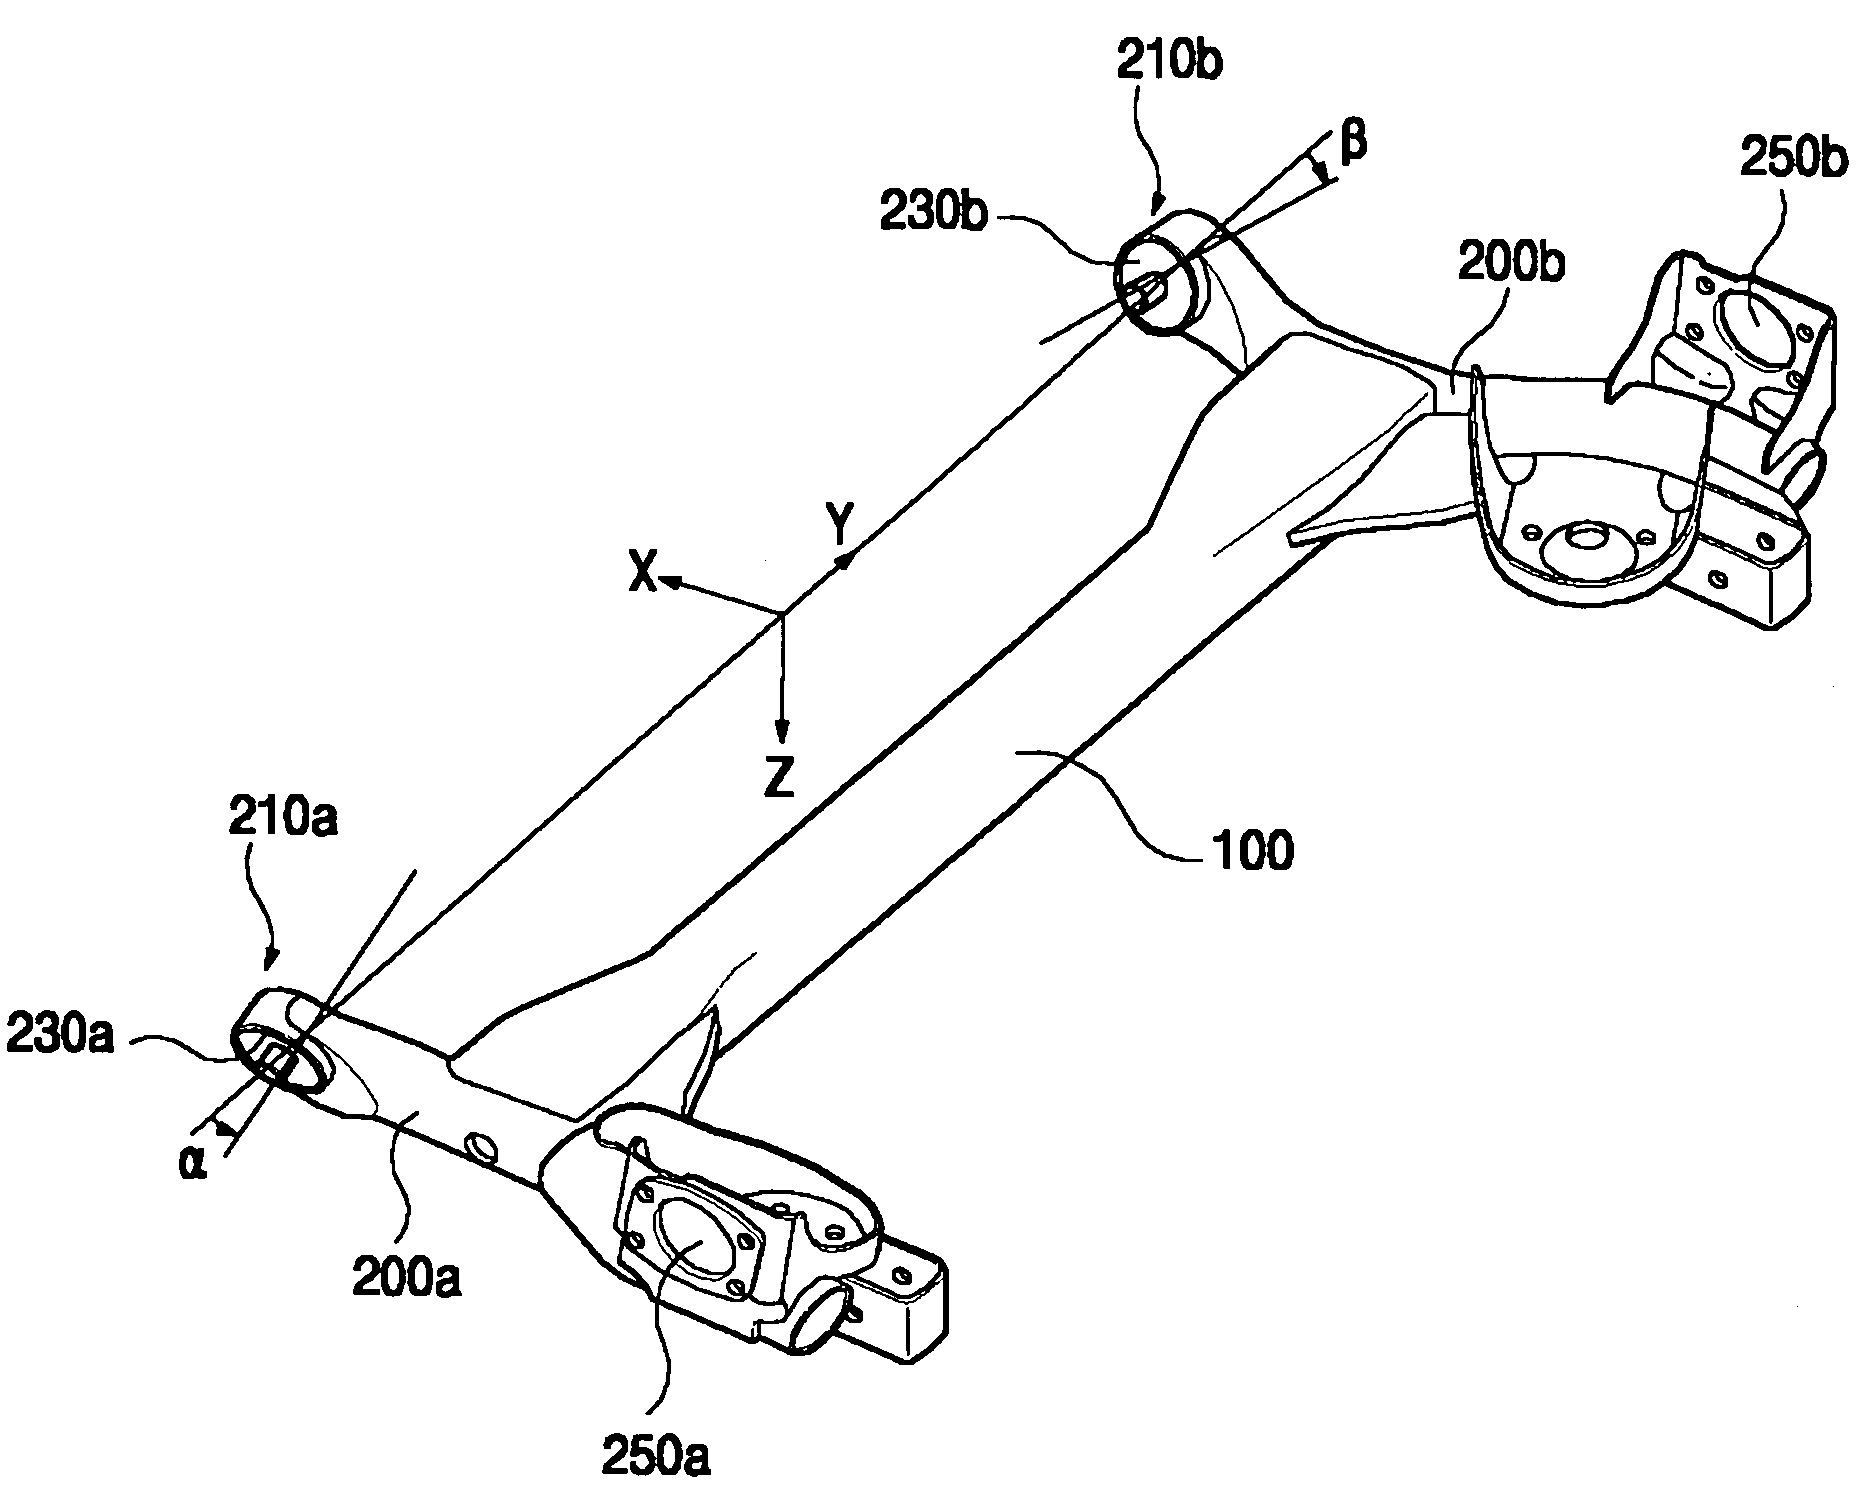 Torsion beam axle suspension